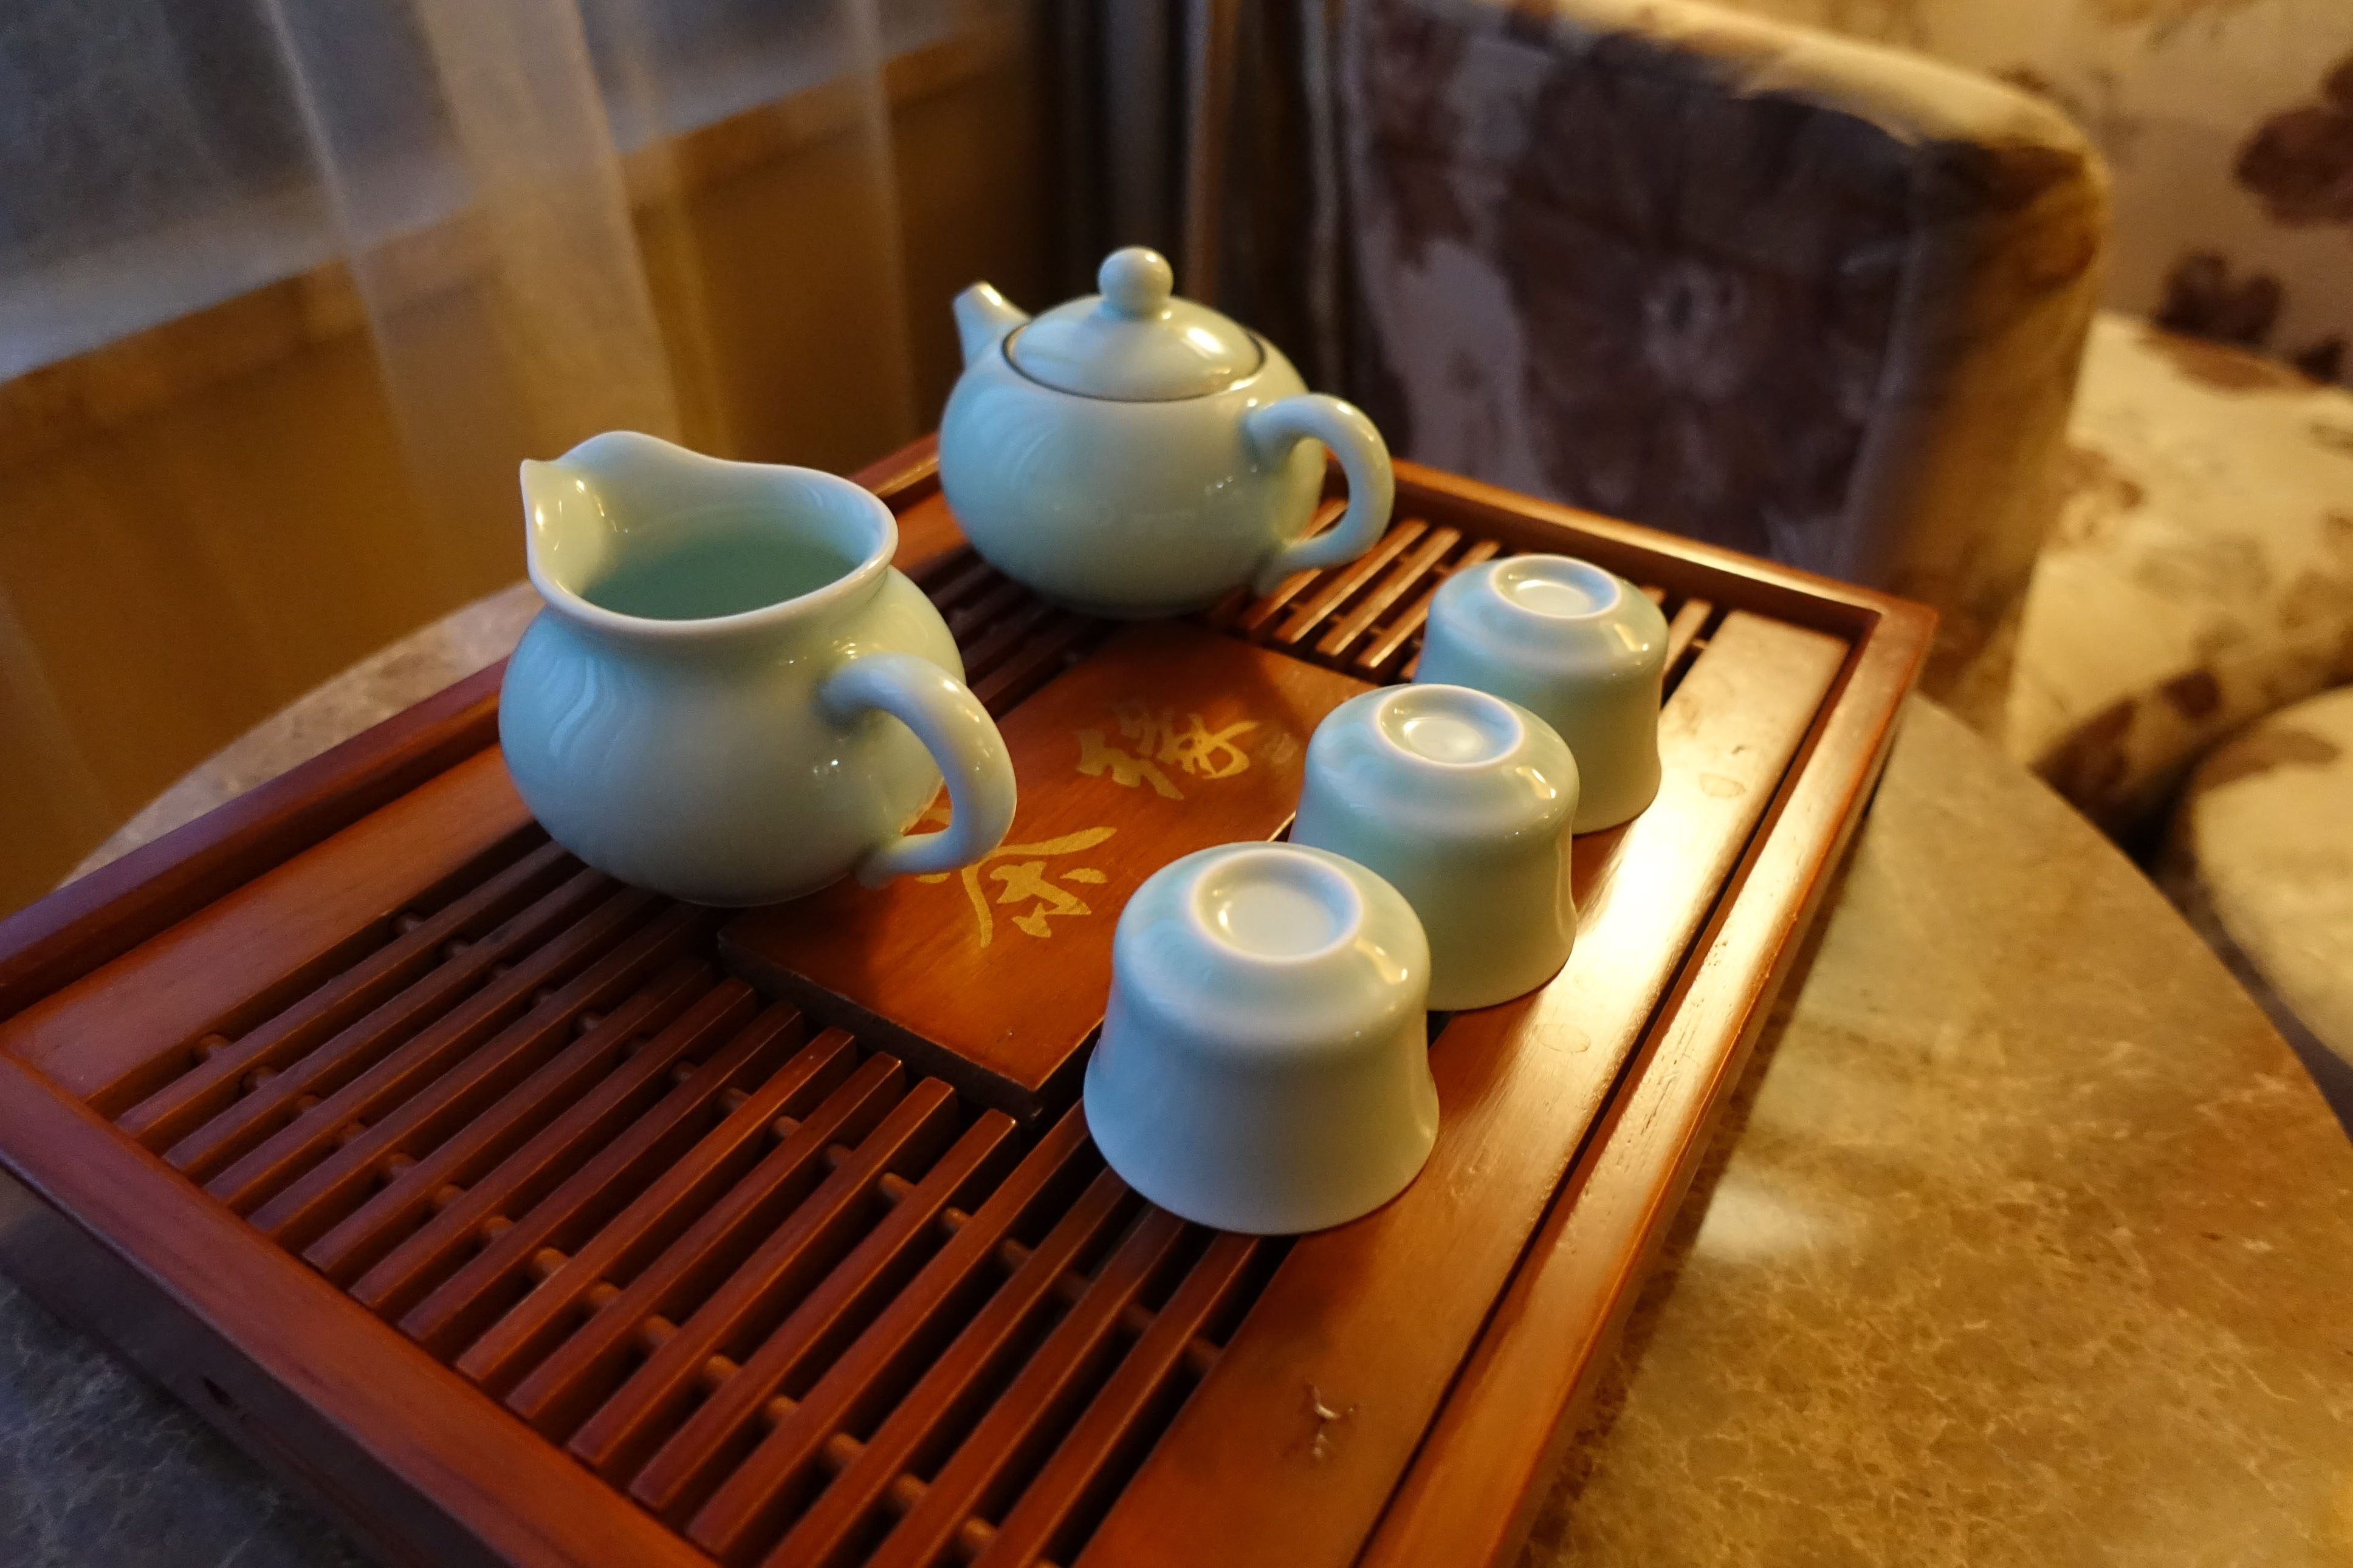 Tiny tea set in our room in Beijing